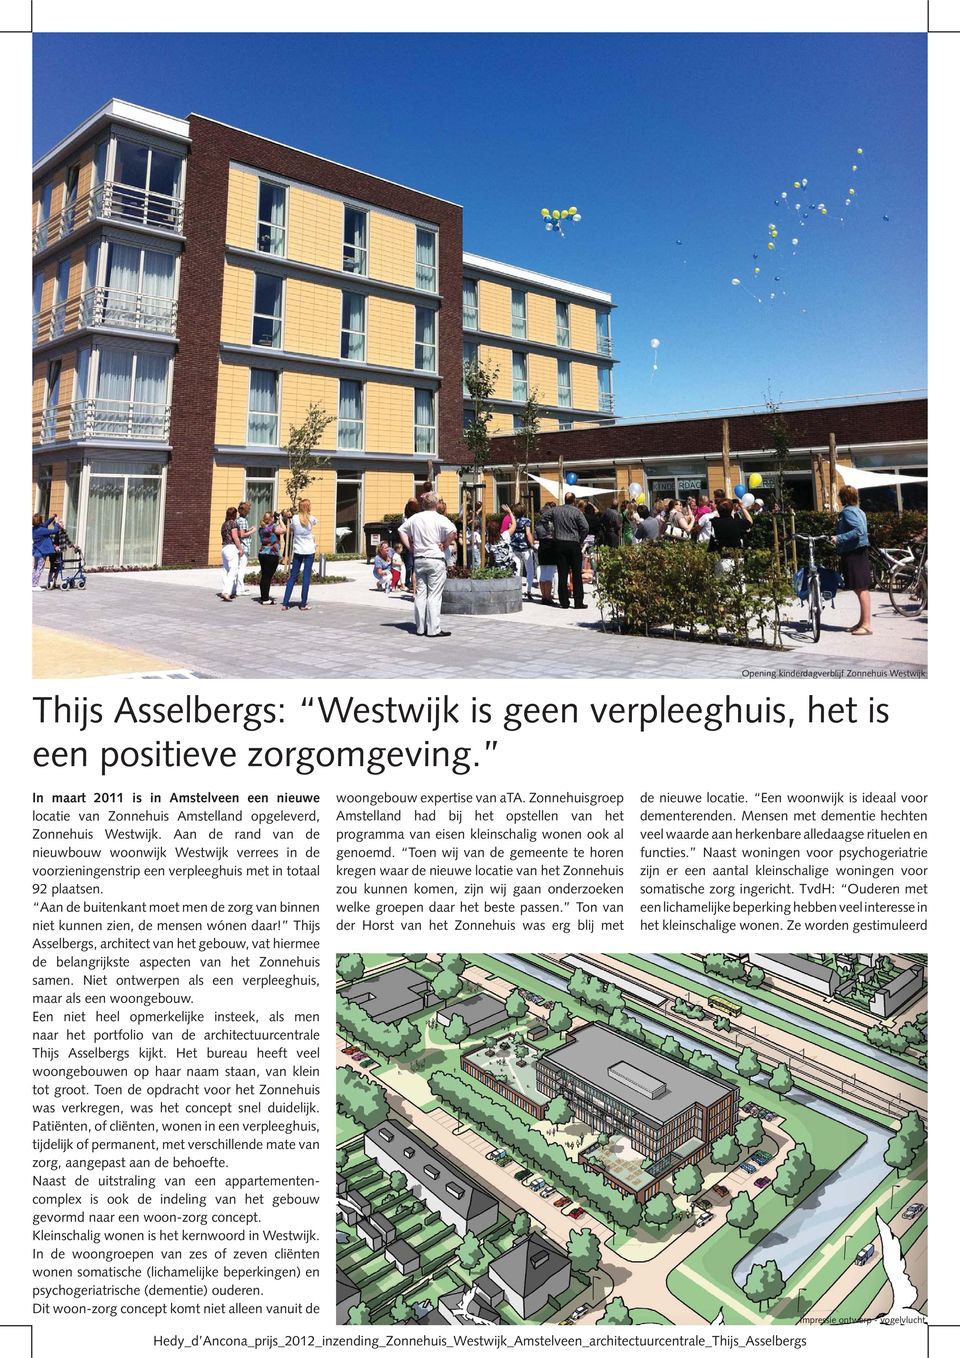 Aan de rand van de nieuwbouw woonwijk Westwijk verrees in de voorzieningenstrip een verpleeghuis met in totaal 92 plaatsen.